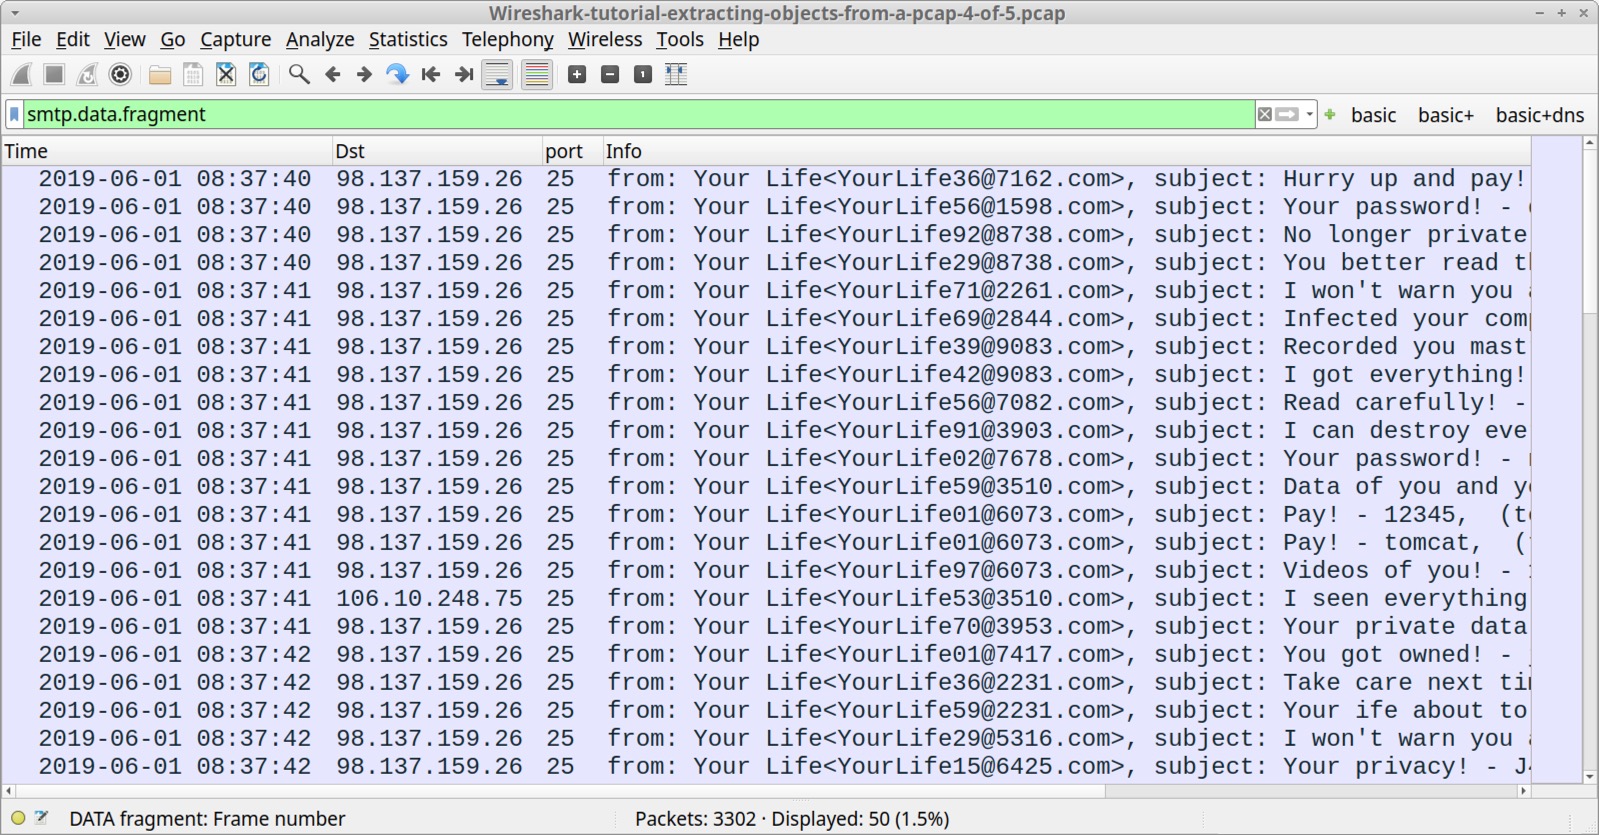 画像 11 は、フィルターを「smtp.data.fragment」に設定した Wireshark のスクリーンショットです。